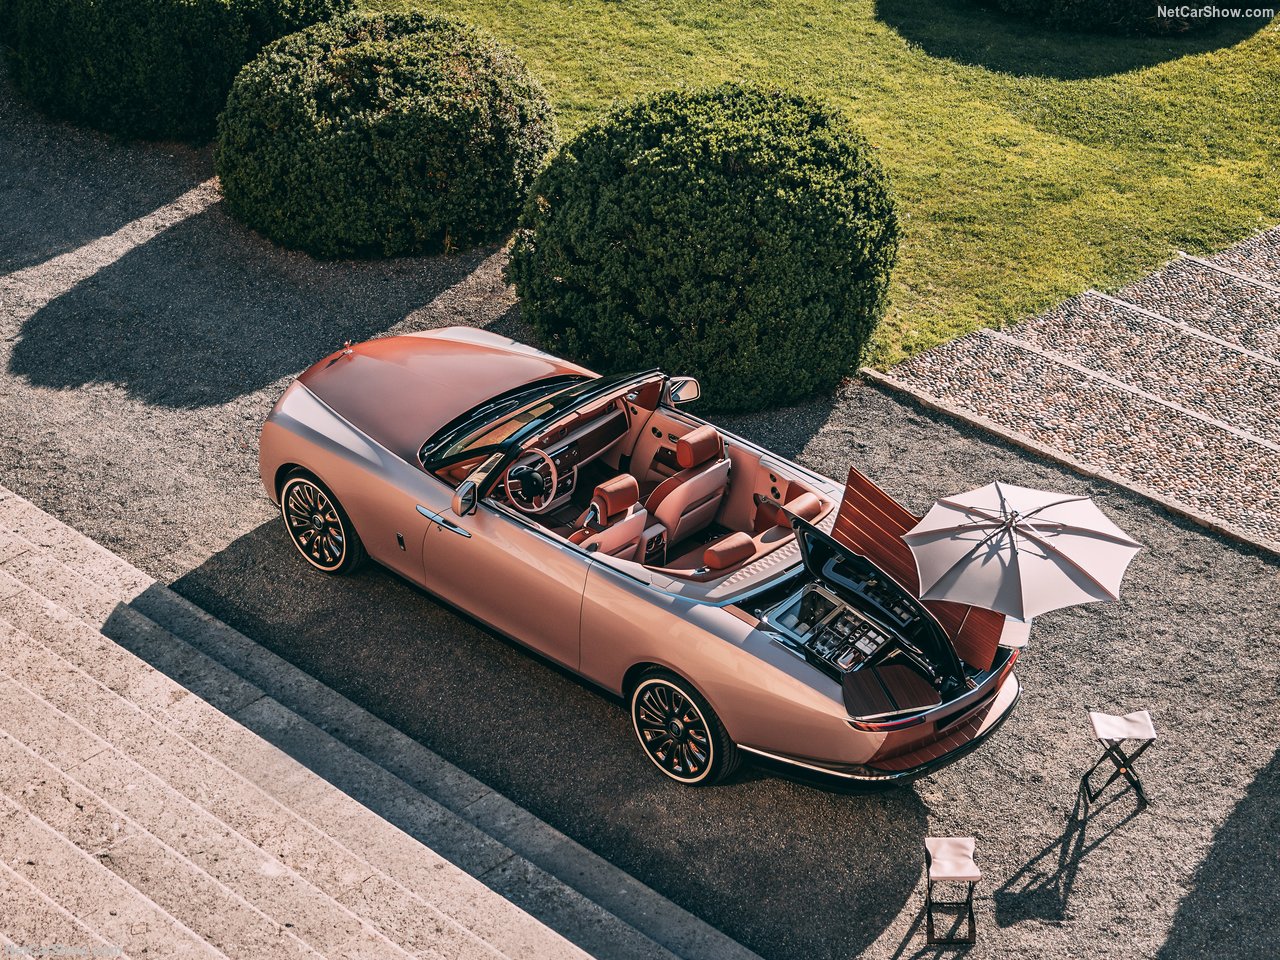 Компания Rolls-Royce представила еще одну ультраэксклюзивную модель Boat Tail, демонстрирующую невероятный уровень персонализации, роскоши и редкости. Запланировано производство всего трех Boat Tails, а предыдущие модели предназначались для суперзвез